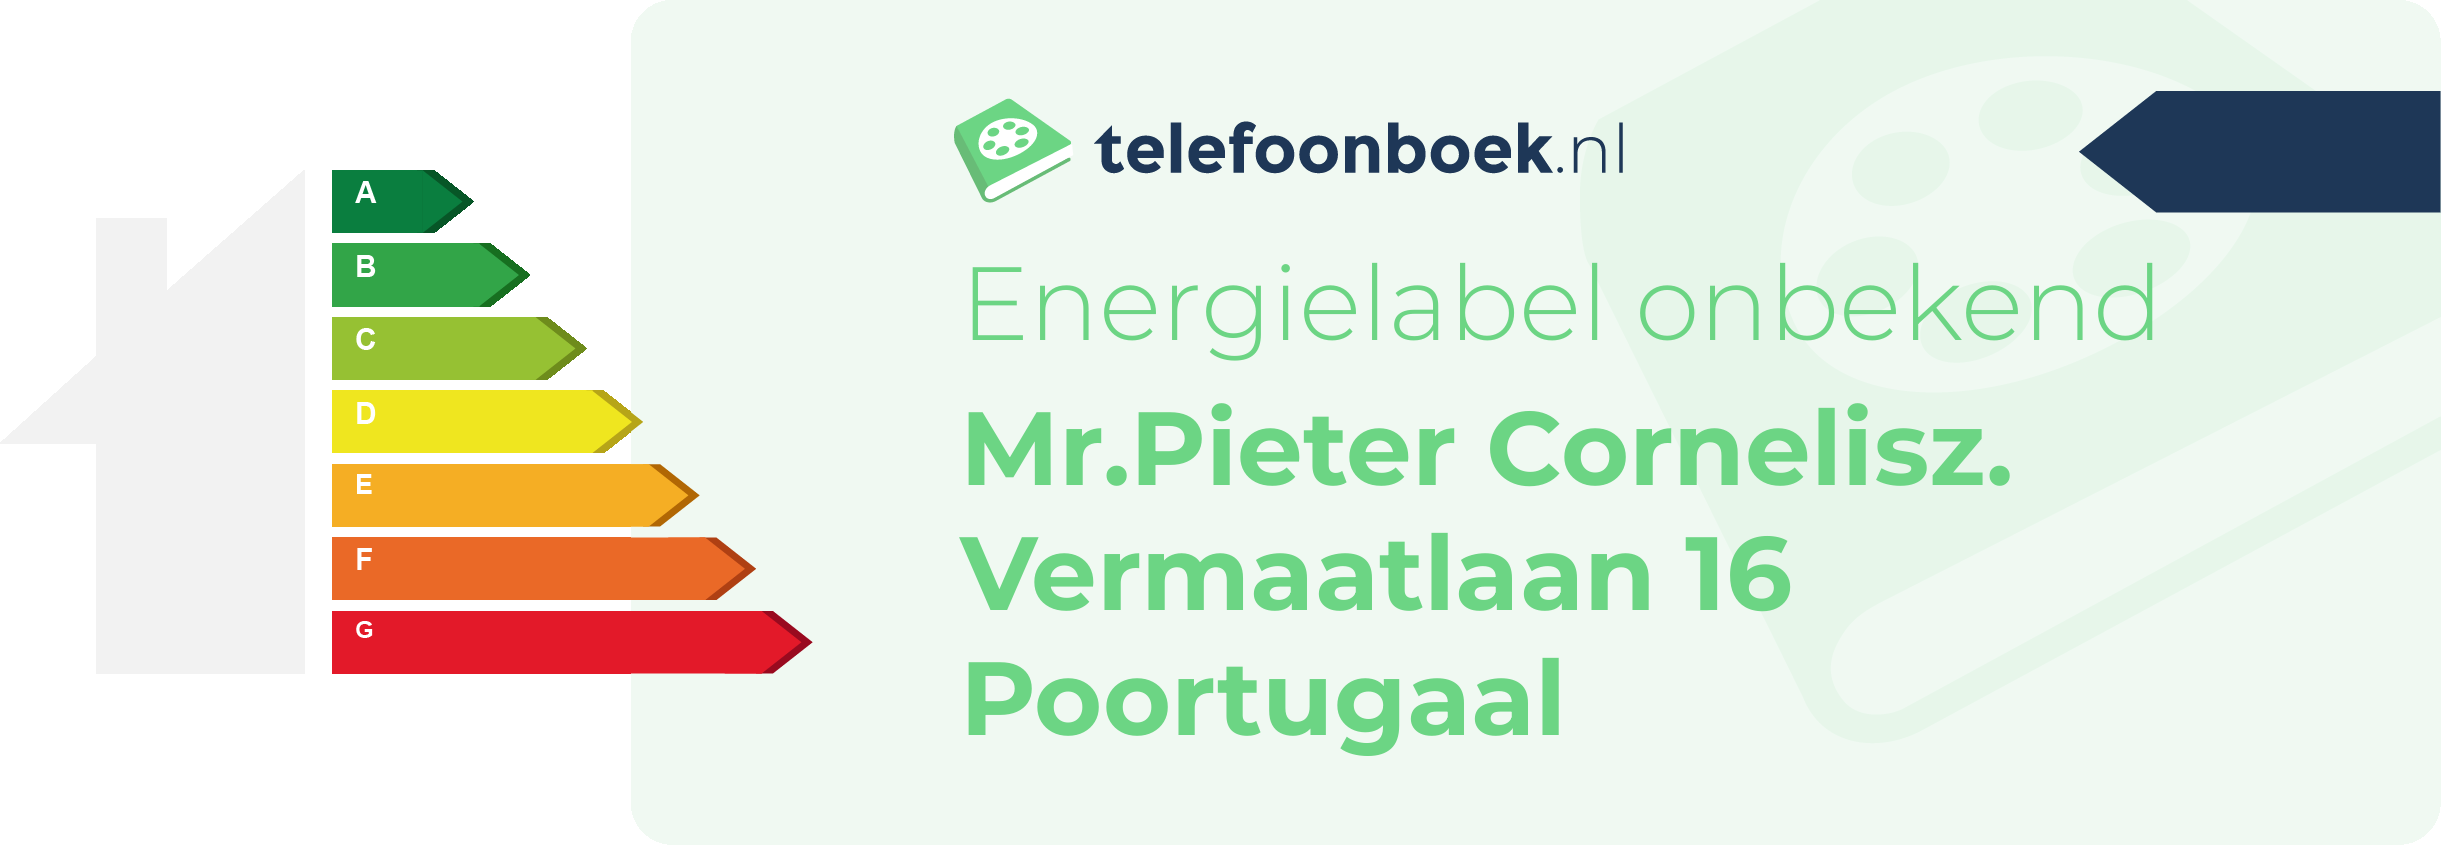 Energielabel Mr.Pieter Cornelisz. Vermaatlaan 16 Poortugaal